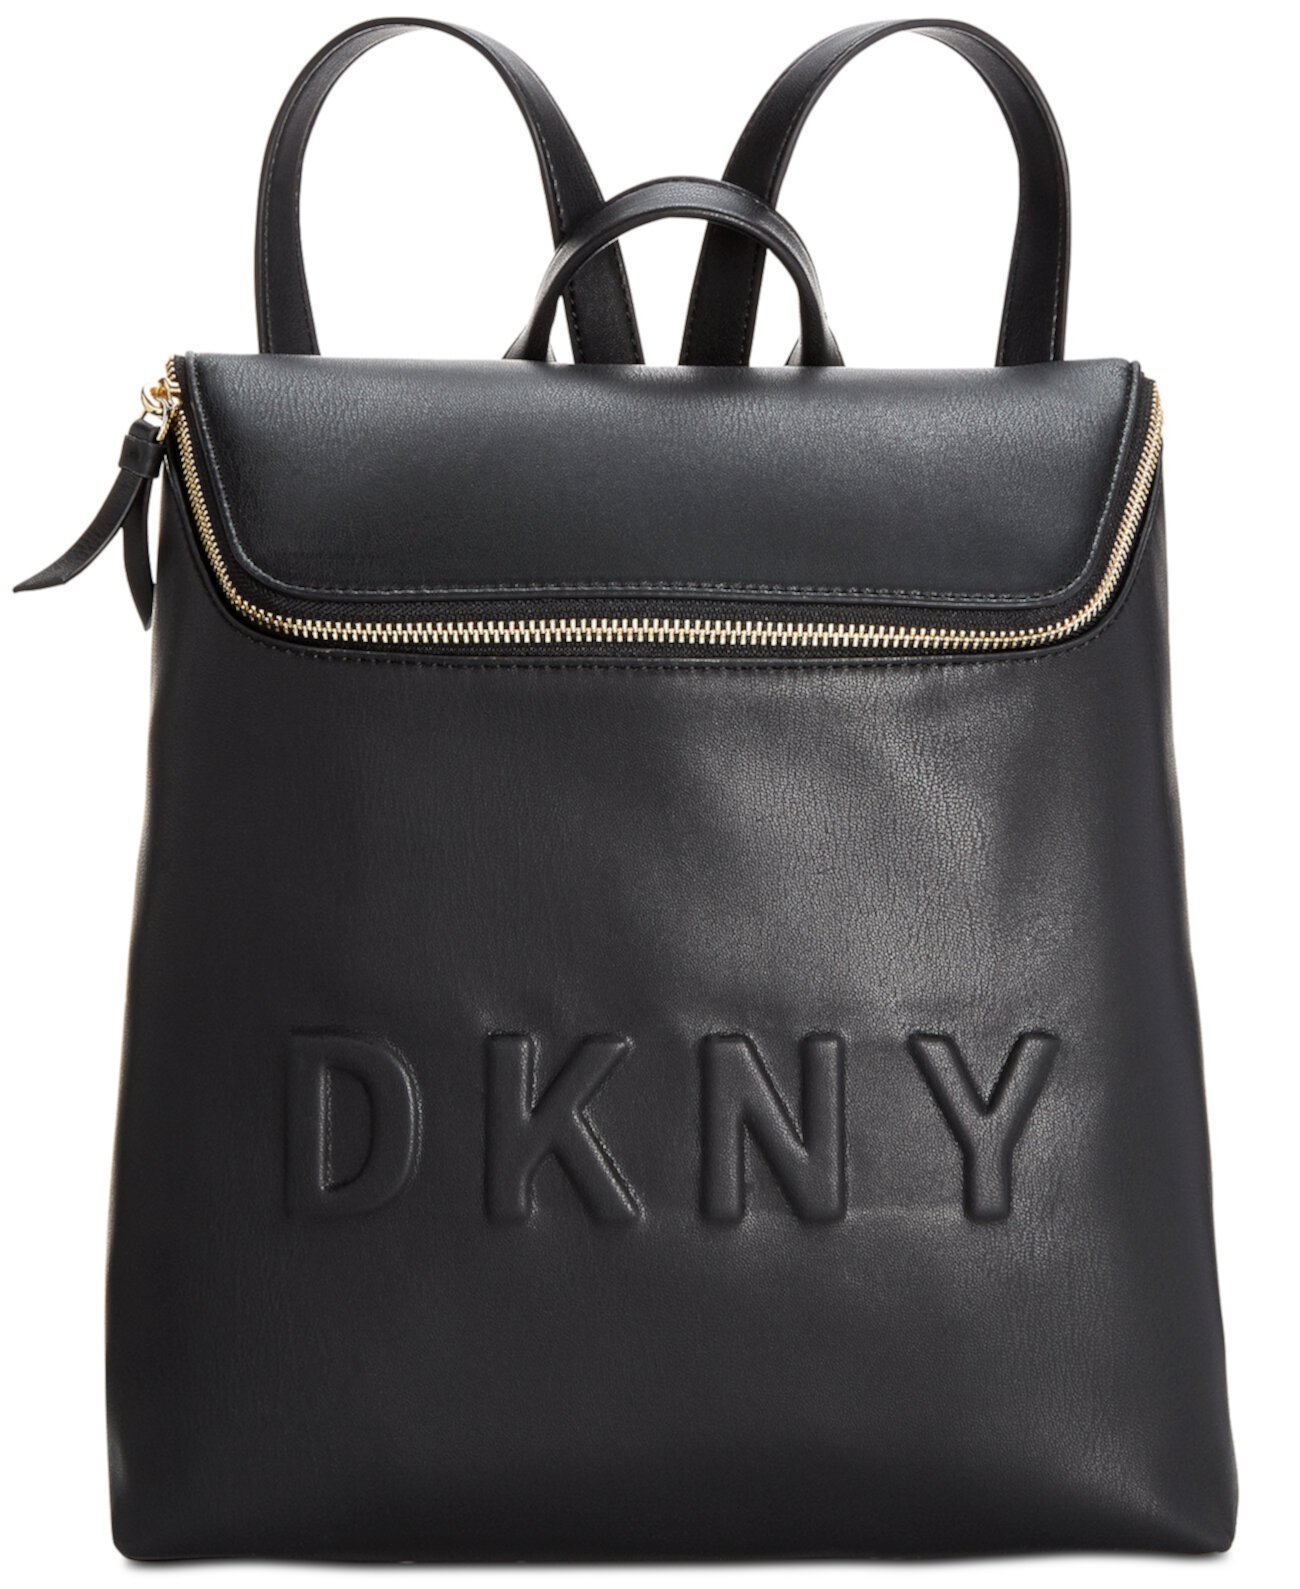 Рюкзак-ведро Tilly с молнией сверху, созданный для Macy's DKNY